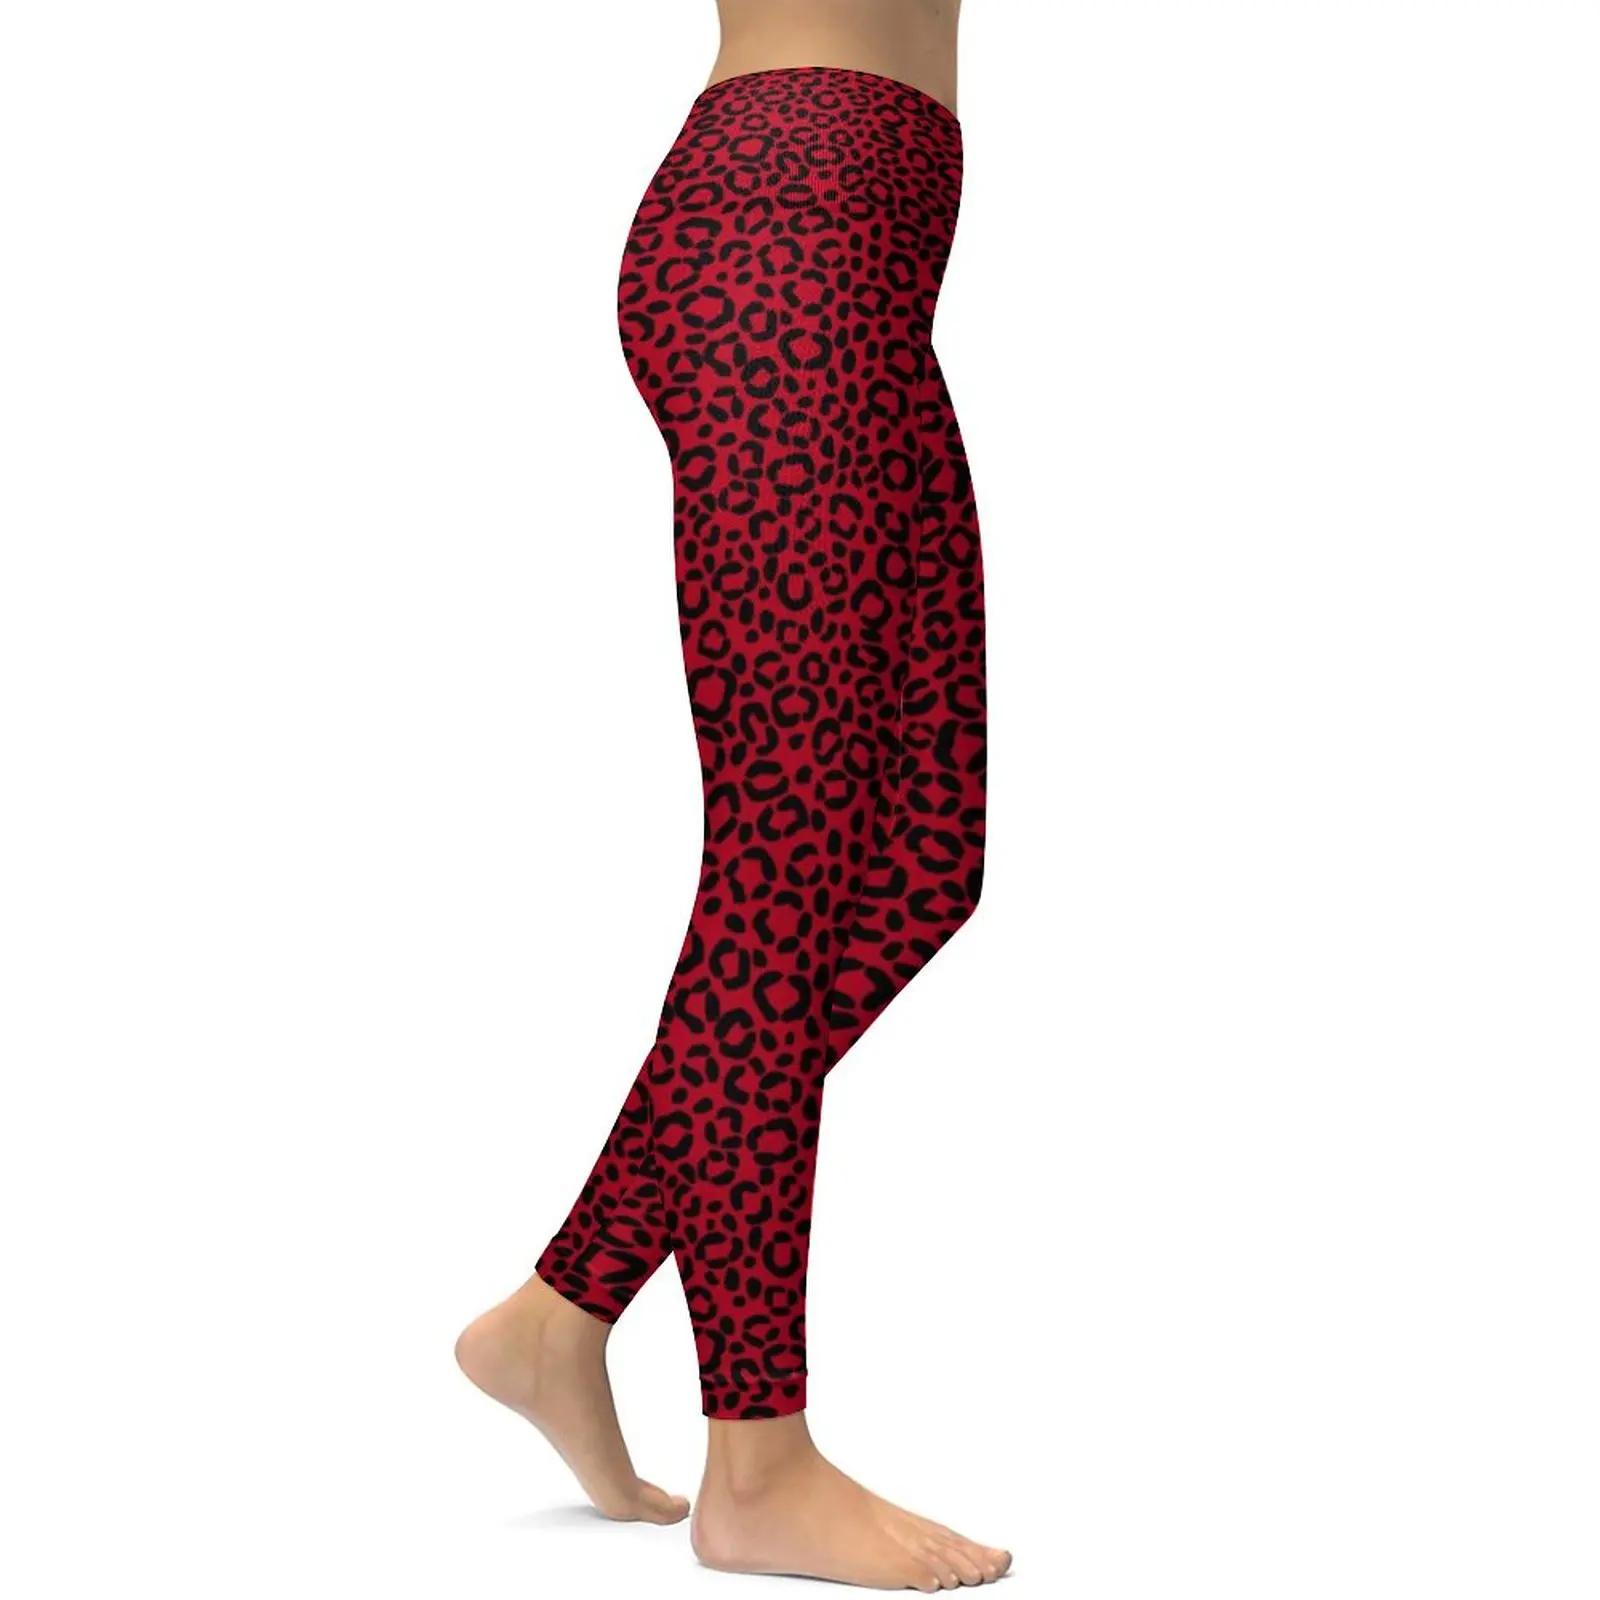 Vermelho E Preto Leopardo Perfeita Perneiras De Pele De Animal Print Ginásio Calças De Yoga Push-Up Elástico Meia-Calça Esporte Feminino Engraçado Leggins Imagem 1